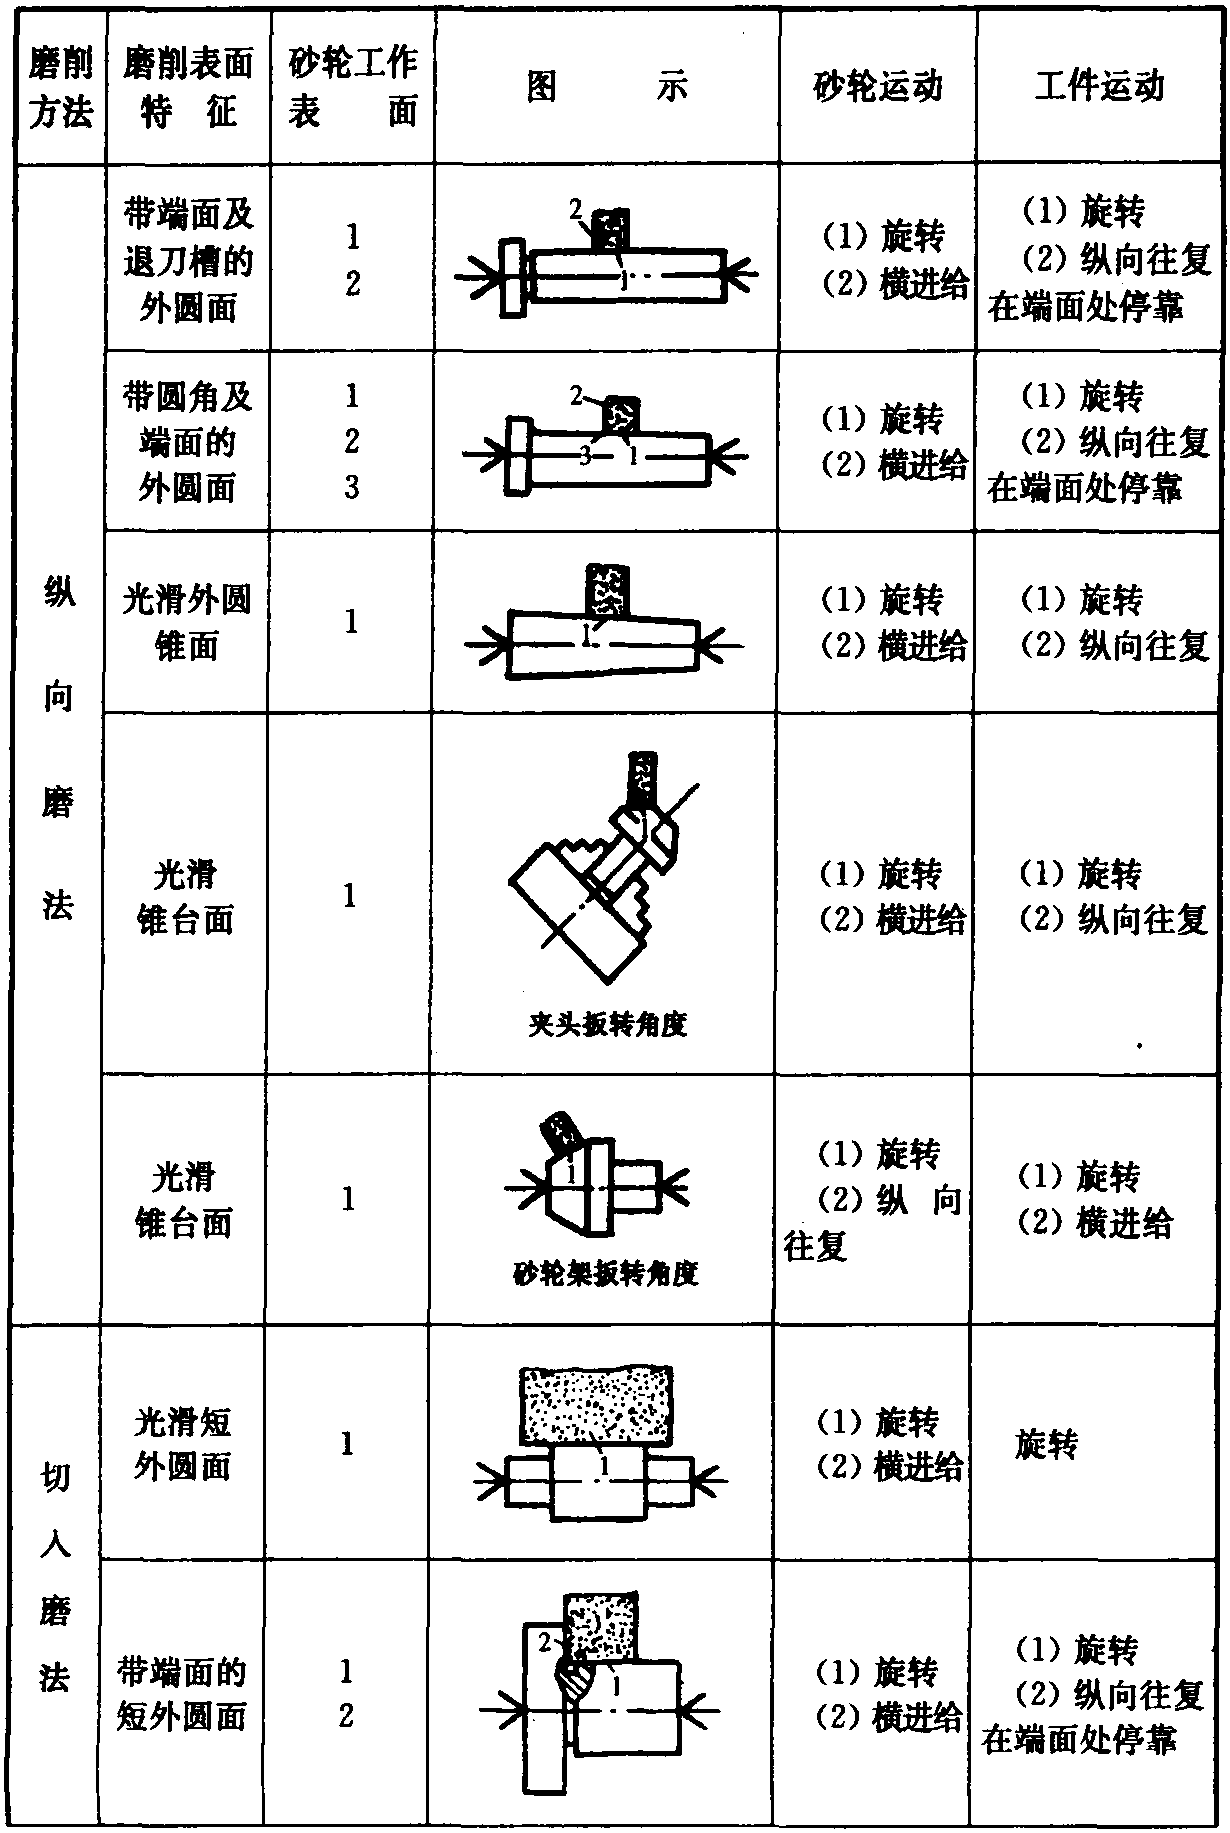 2.1.2 外圆磨削常用方法(表2.1-2)